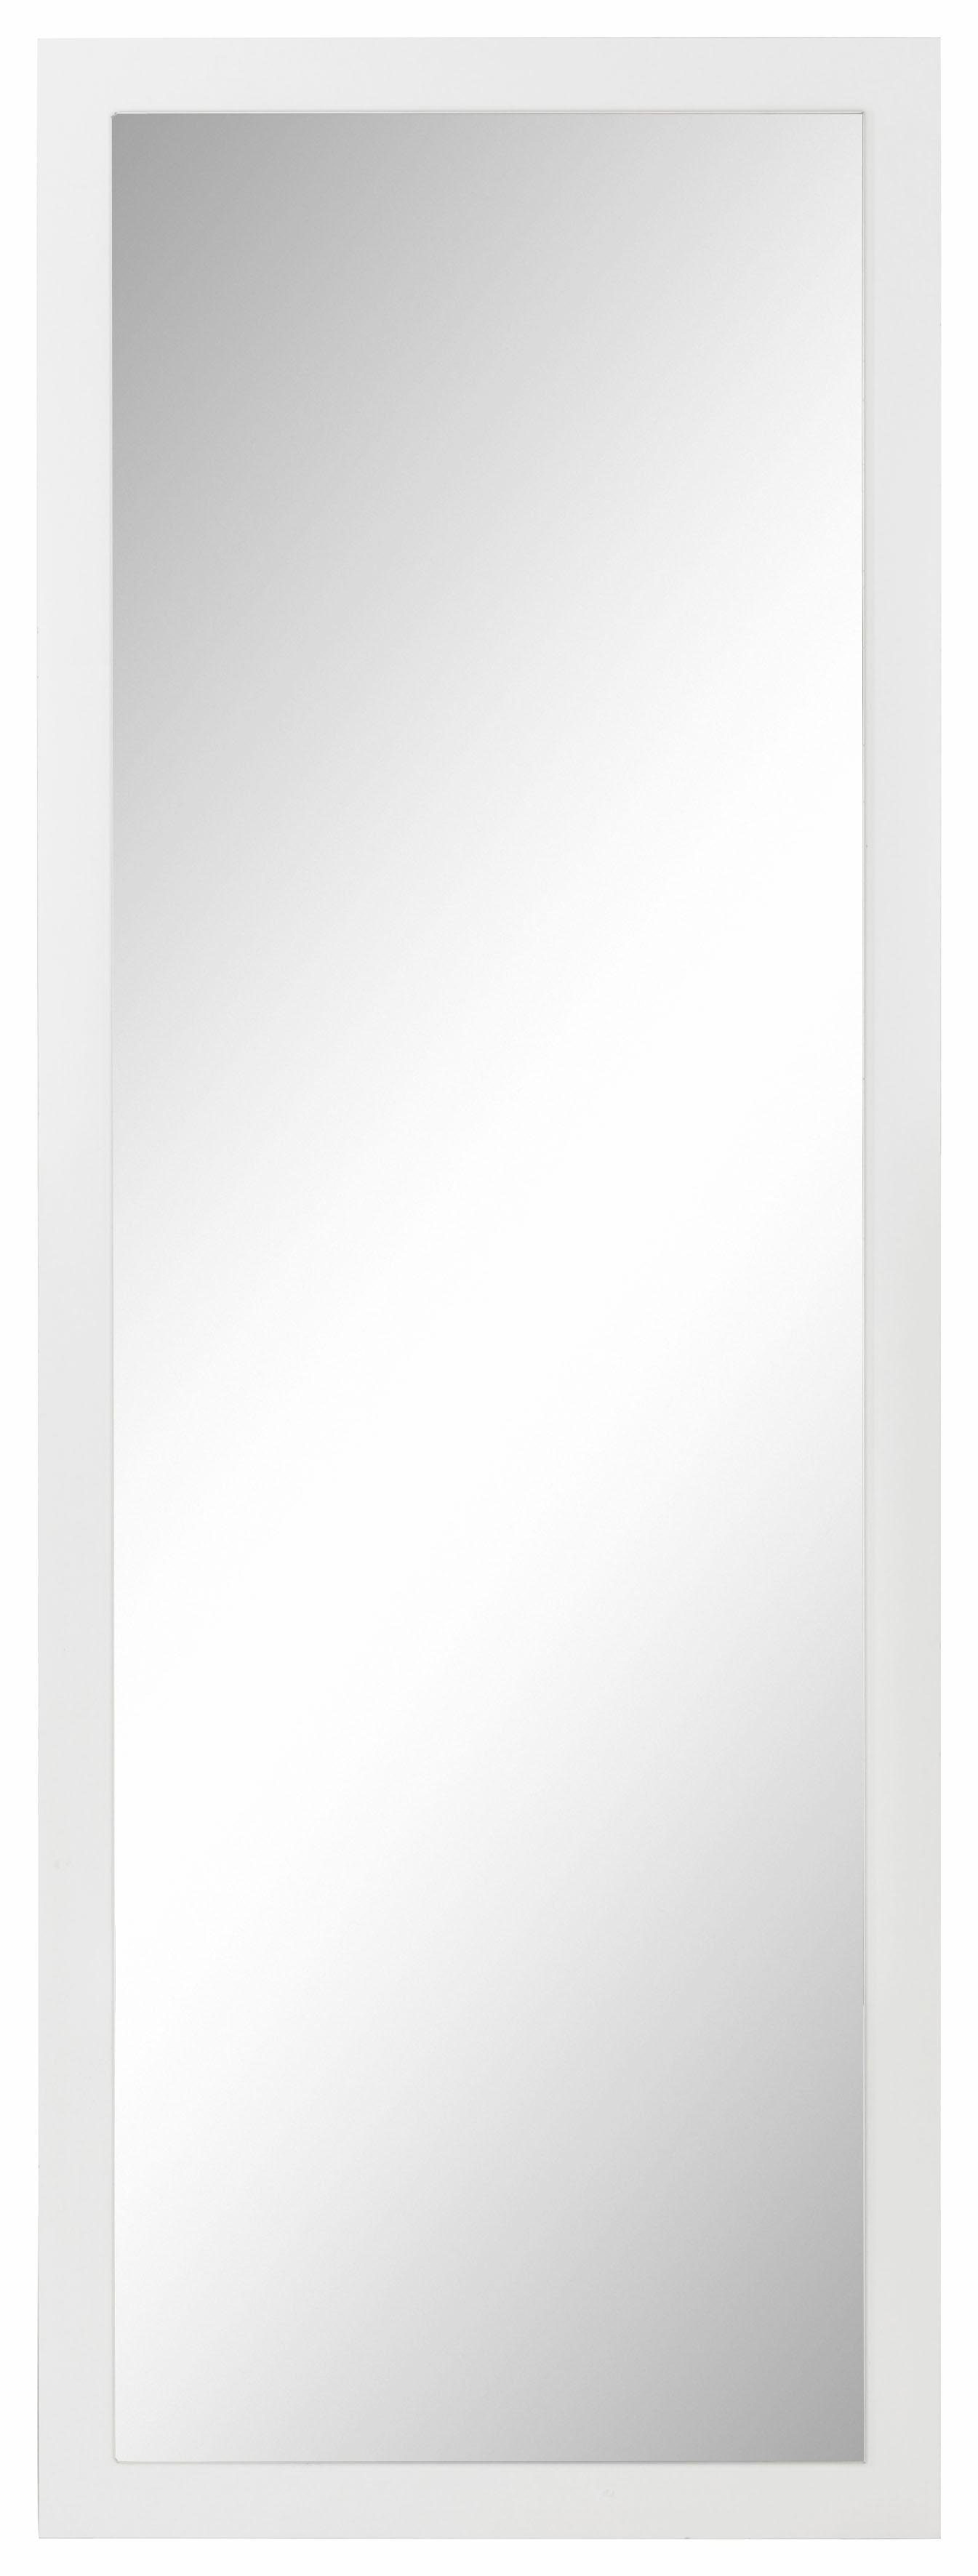 borchardt Möbel Spiegel Panama, Rahmen, Spiegelfläche: Maße (B/H): 156/50 cm